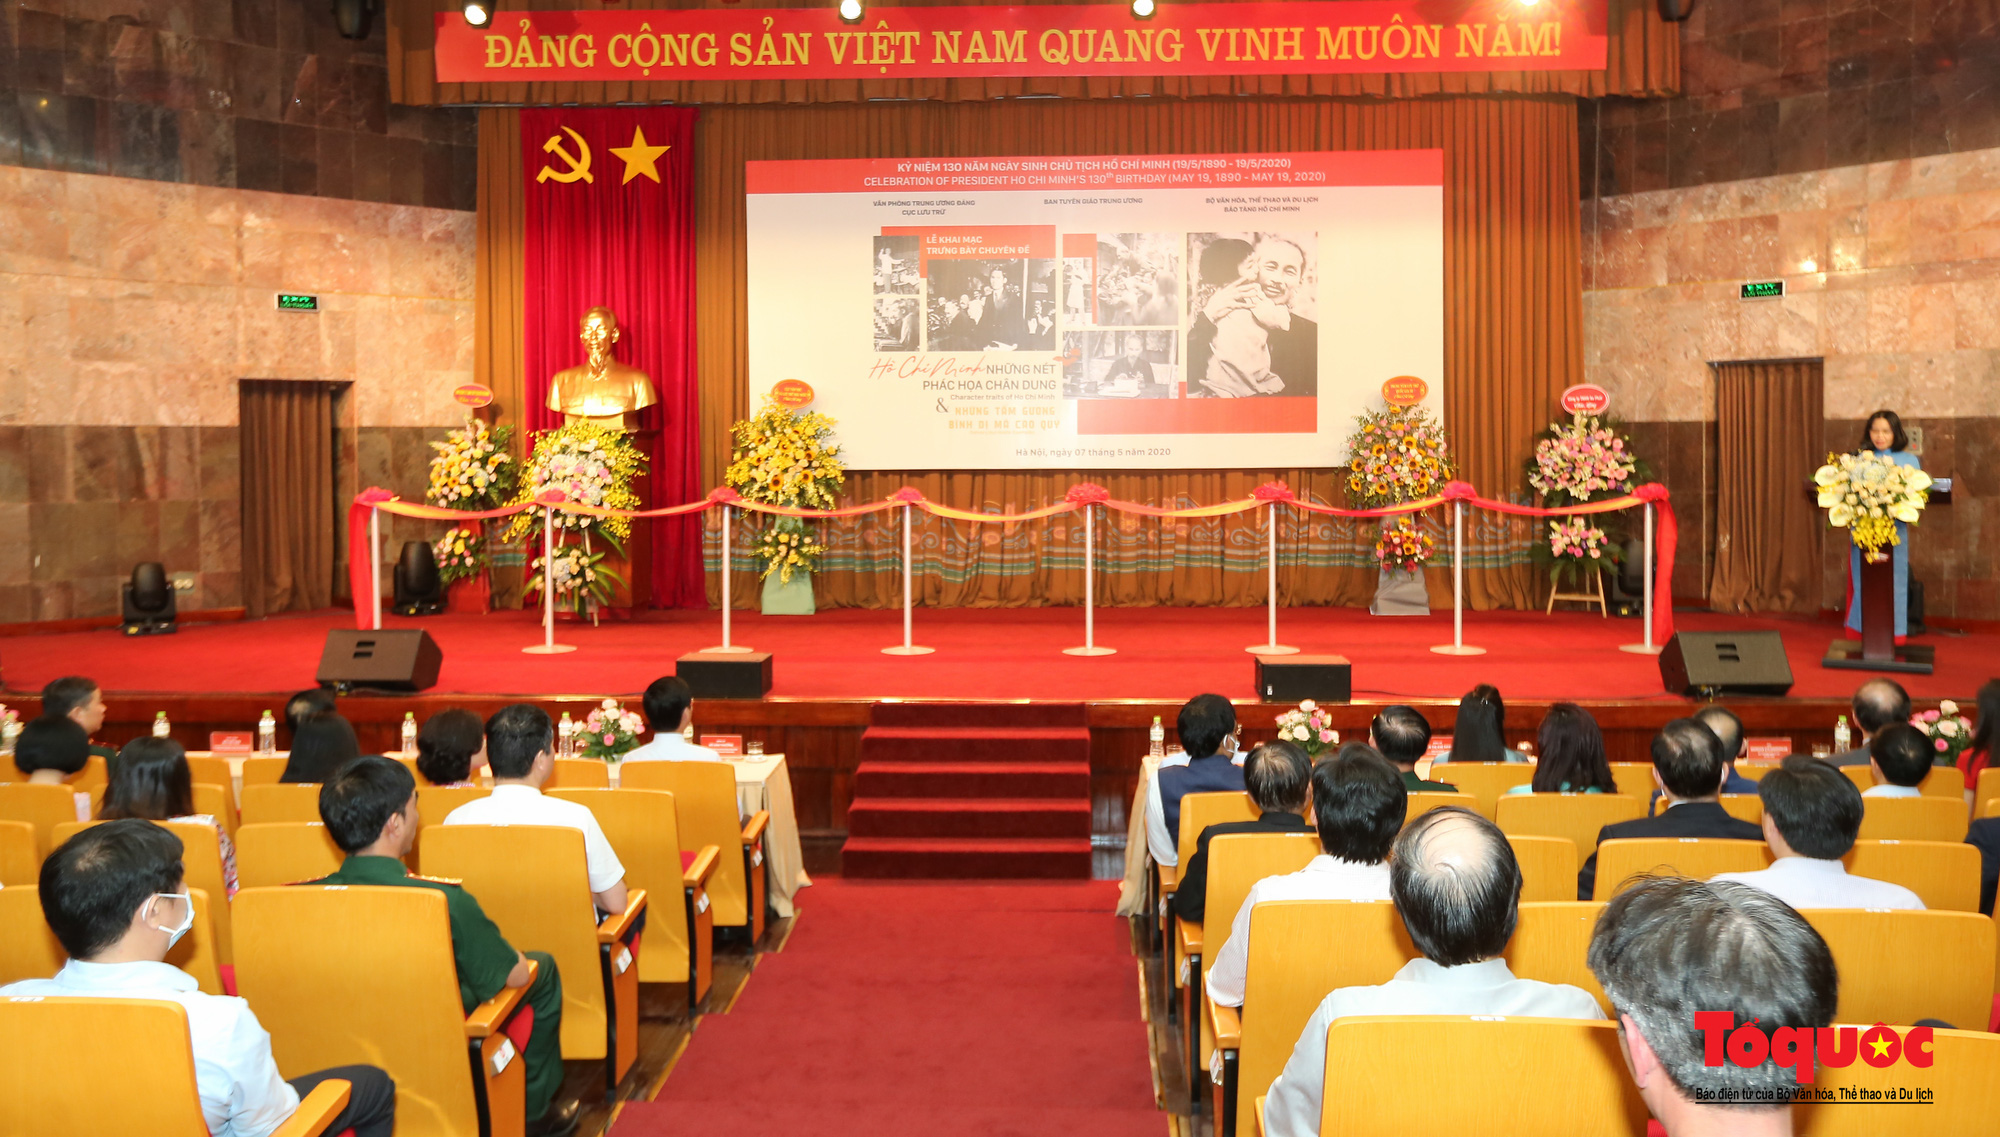 Khai mạc trưng bày chuyên đề: Hồ Chí Minh - Những nét phác họa chân dung; Những tấm gương bình dị mà cao quý  - Ảnh 1.